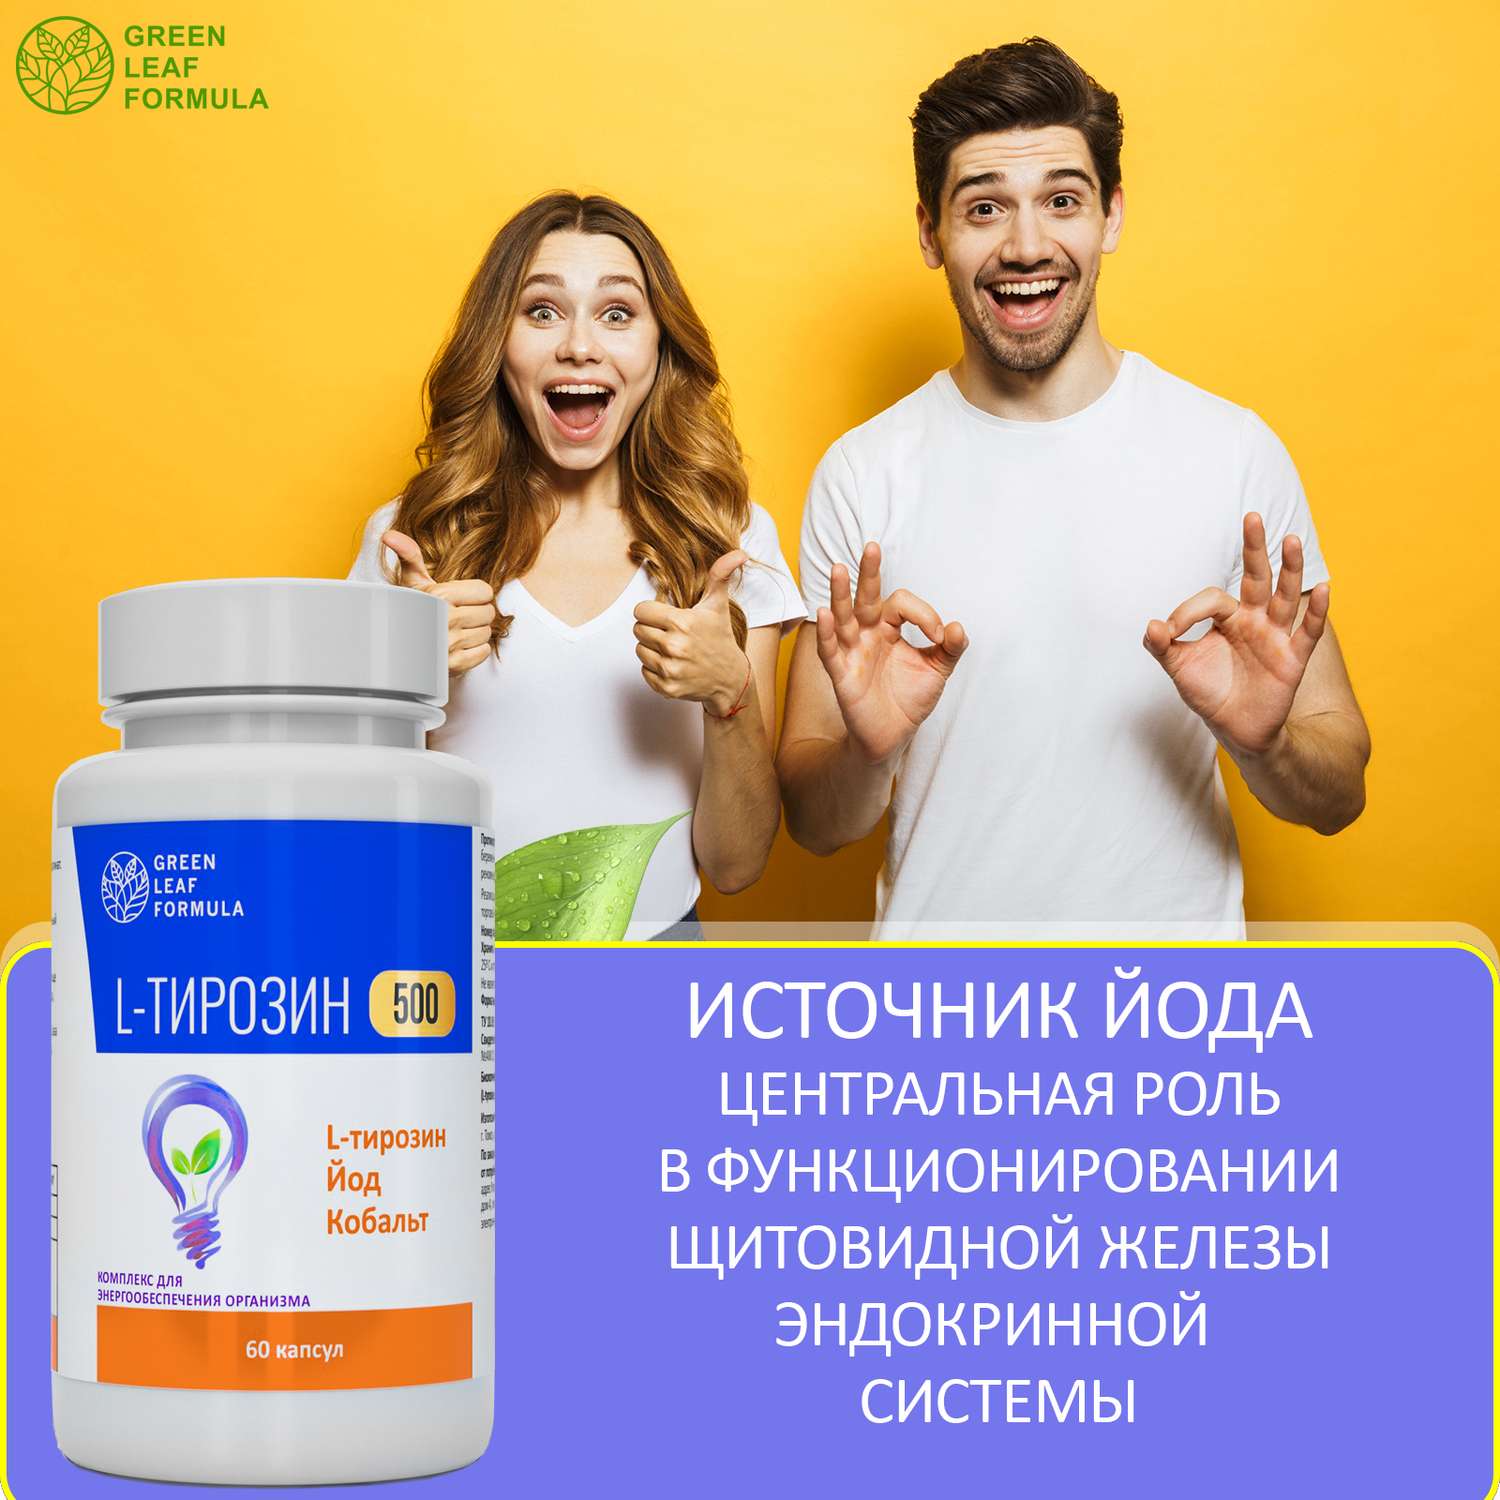 L-тирозин 500 мг аминокислота Green Leaf Formula йод витамины для энергии и щитовидной железы тирозин для похудения - фото 6